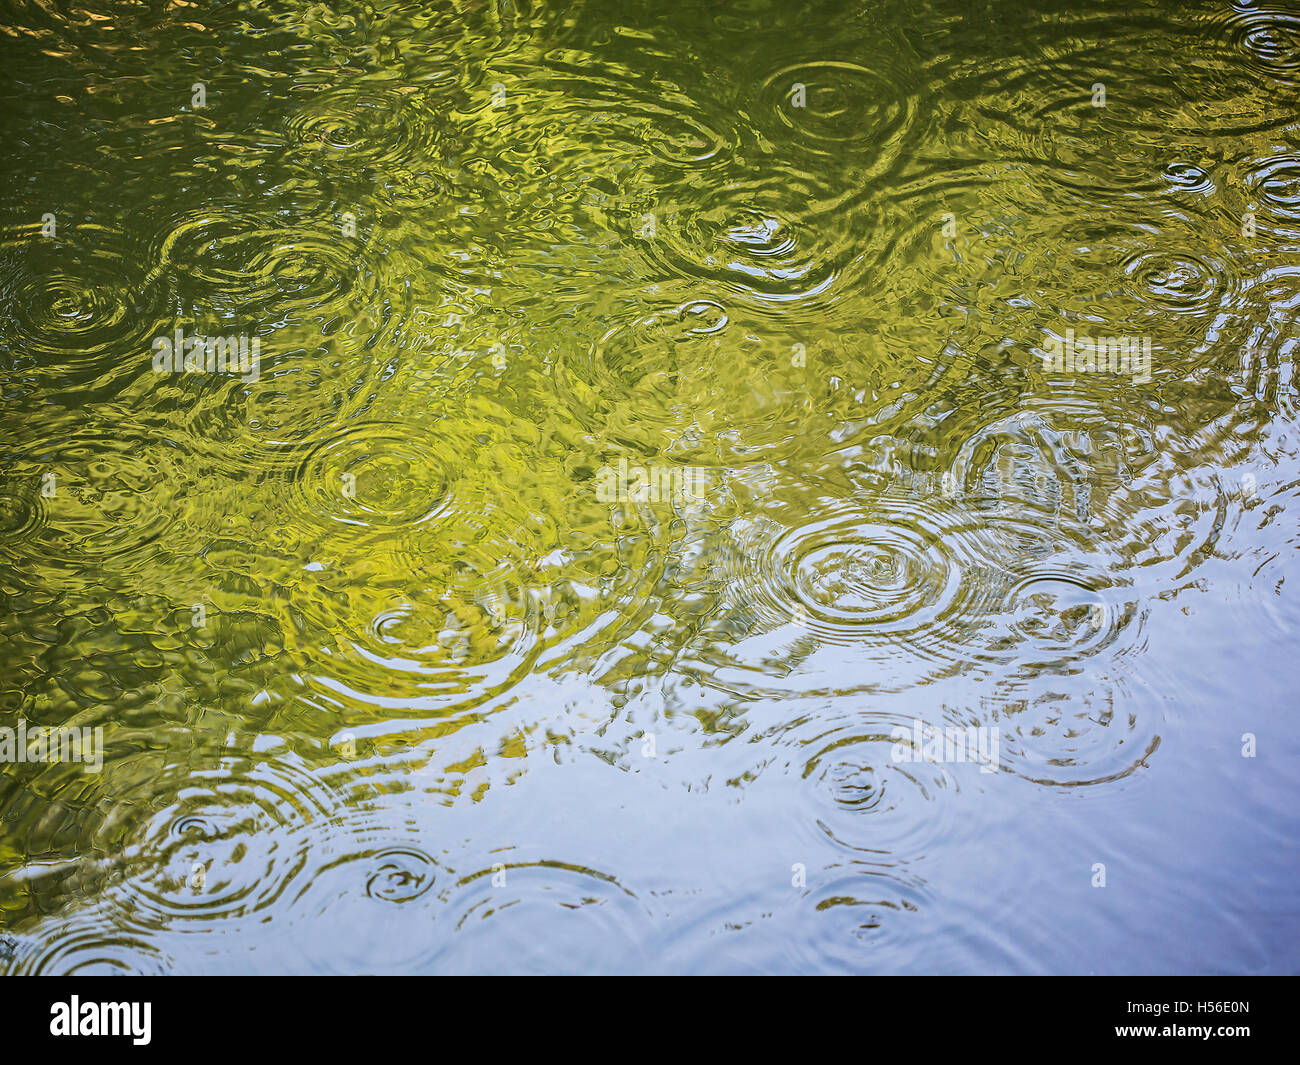 Natürliche Wasser Ripple-Effekt in einem Teich gemacht. Stockfoto